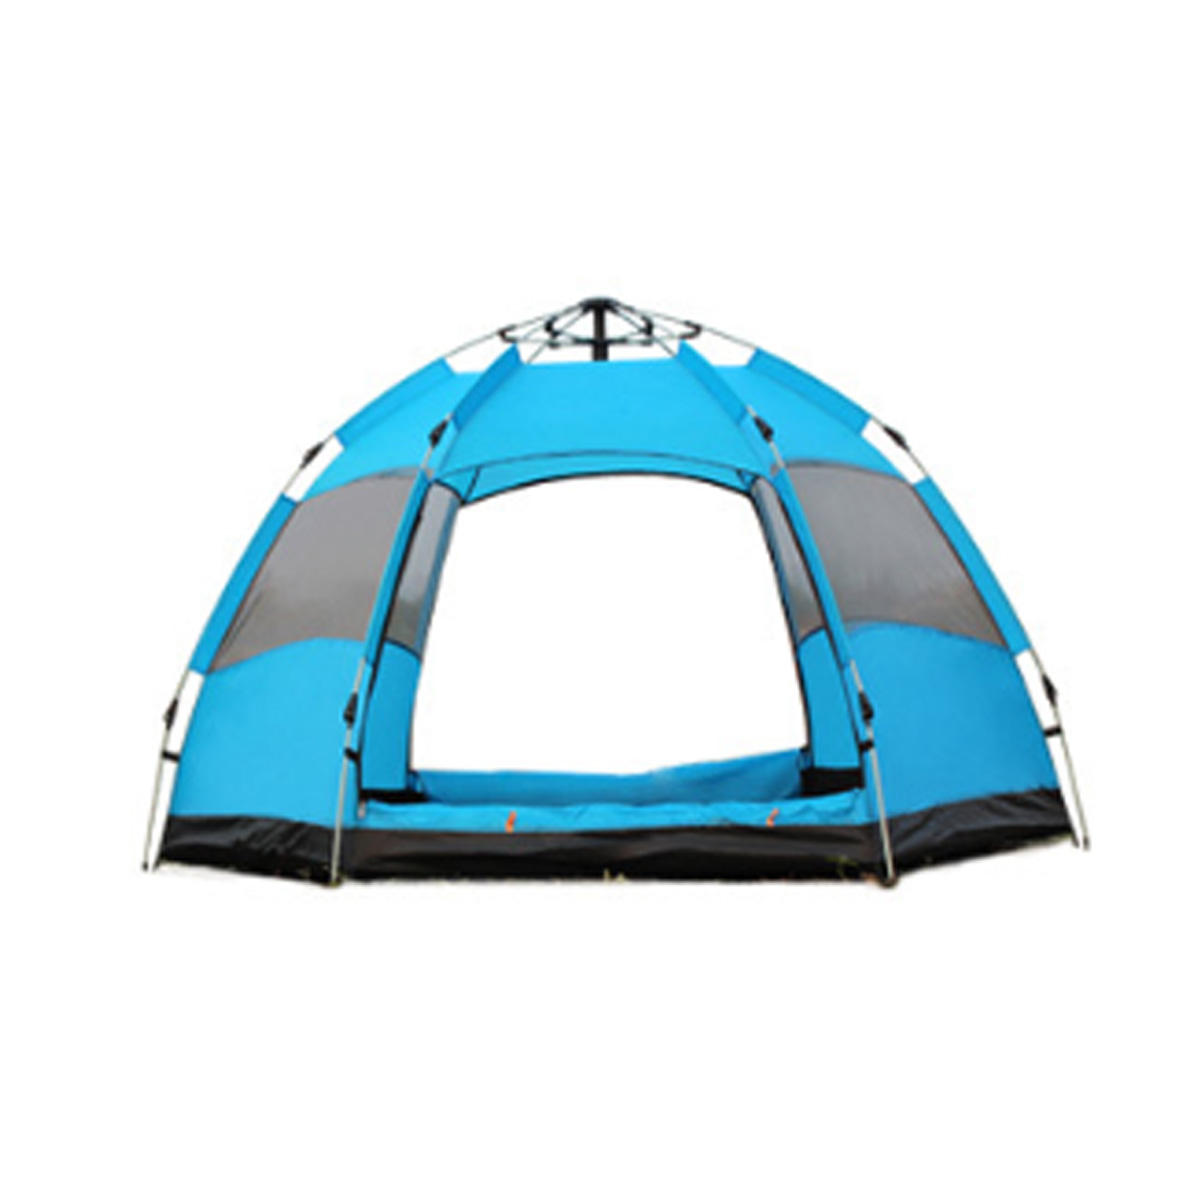 Teljesen automatikus, vízálló, gyorsan nyitható sátor 3-5 személy számára, ideális családi kempingezéshez, túrázáshoz, horgászáshoz, napvédő - narancssárga / zöld / kék.